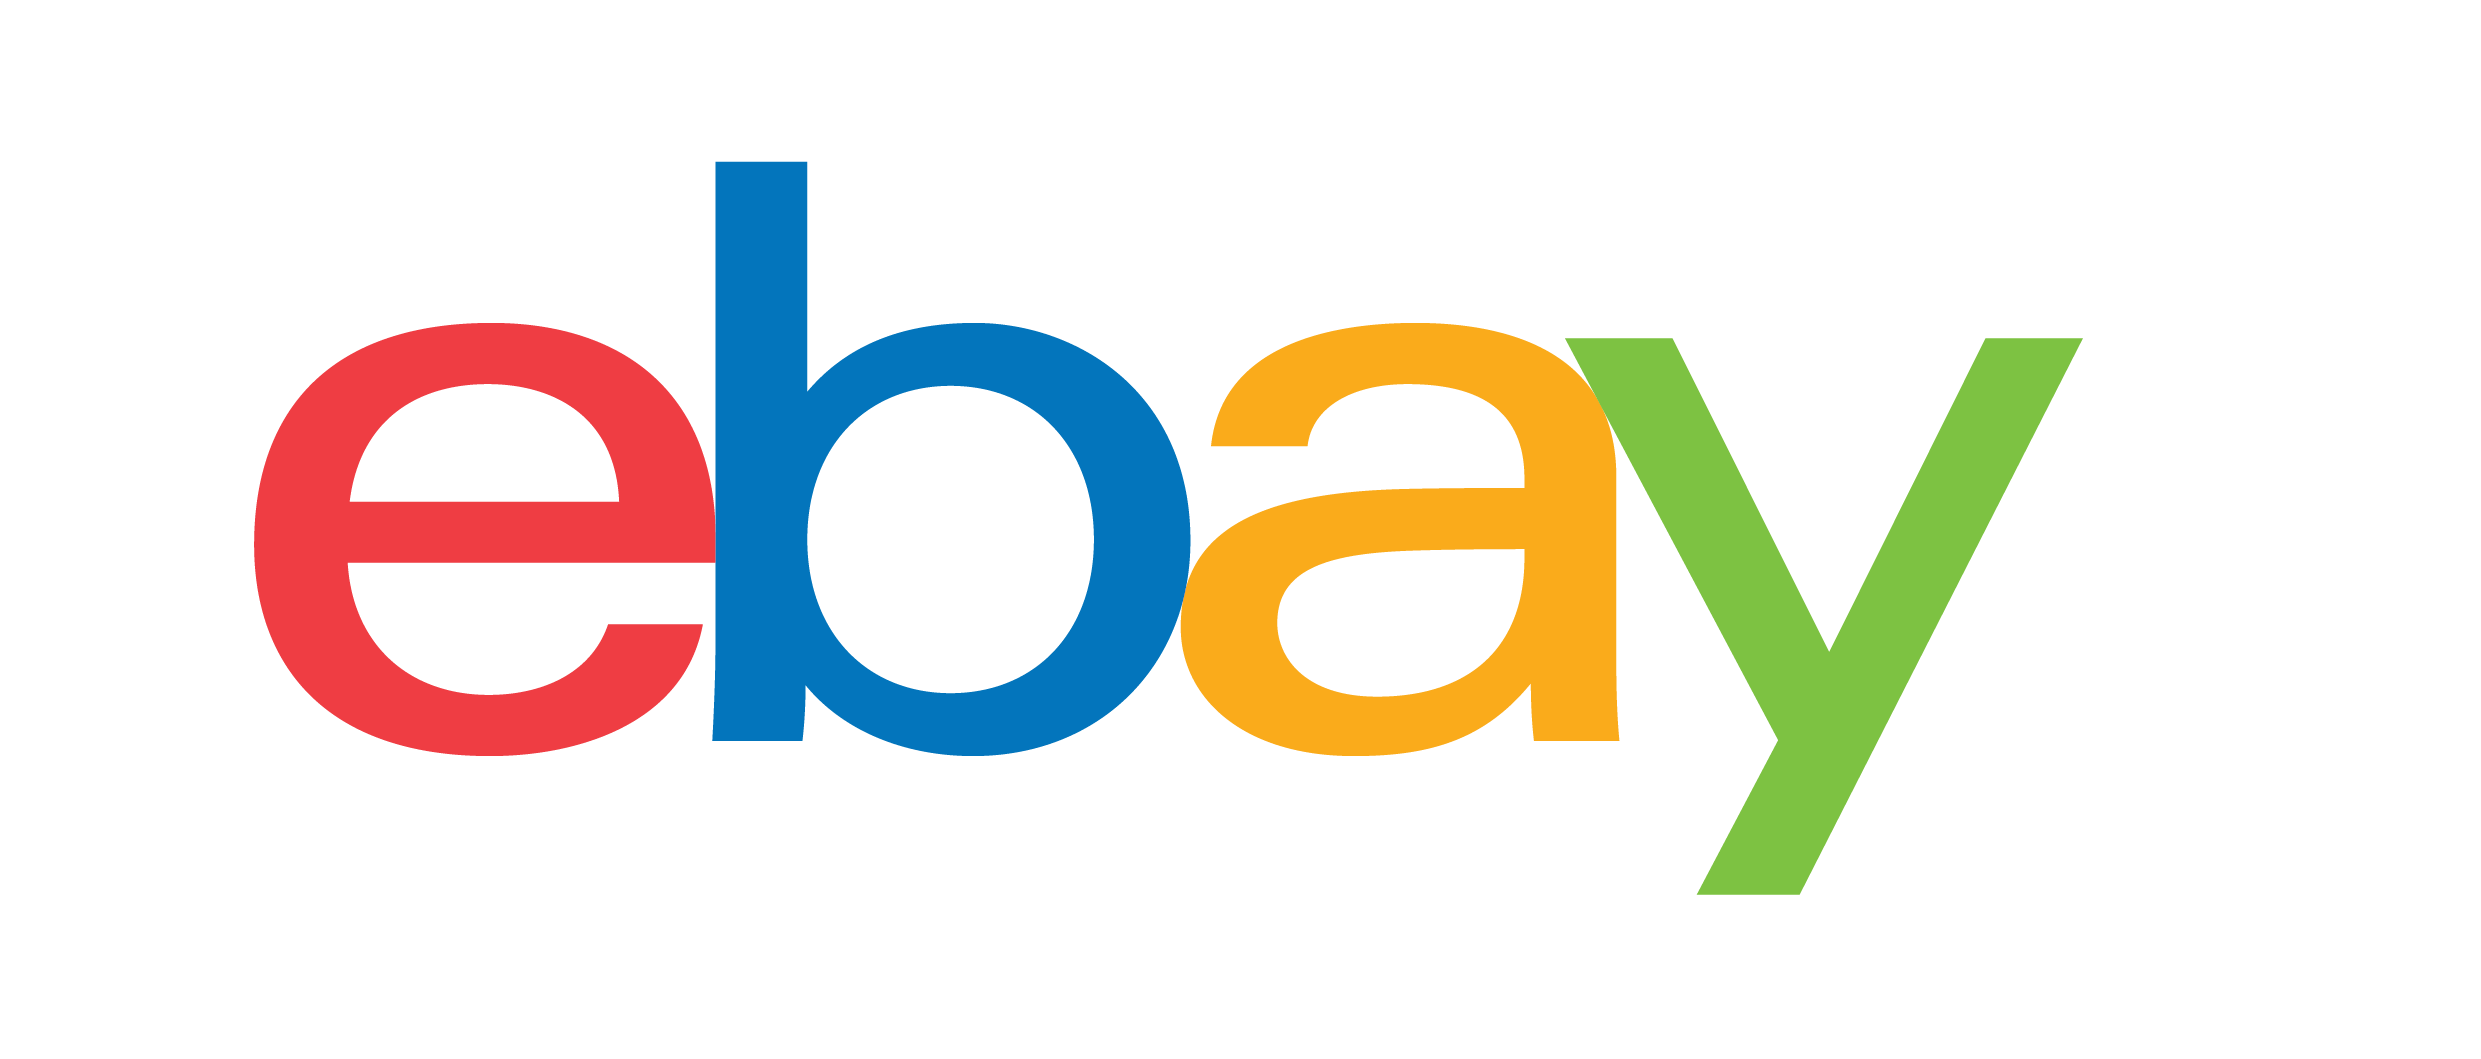 eBay का लोगो